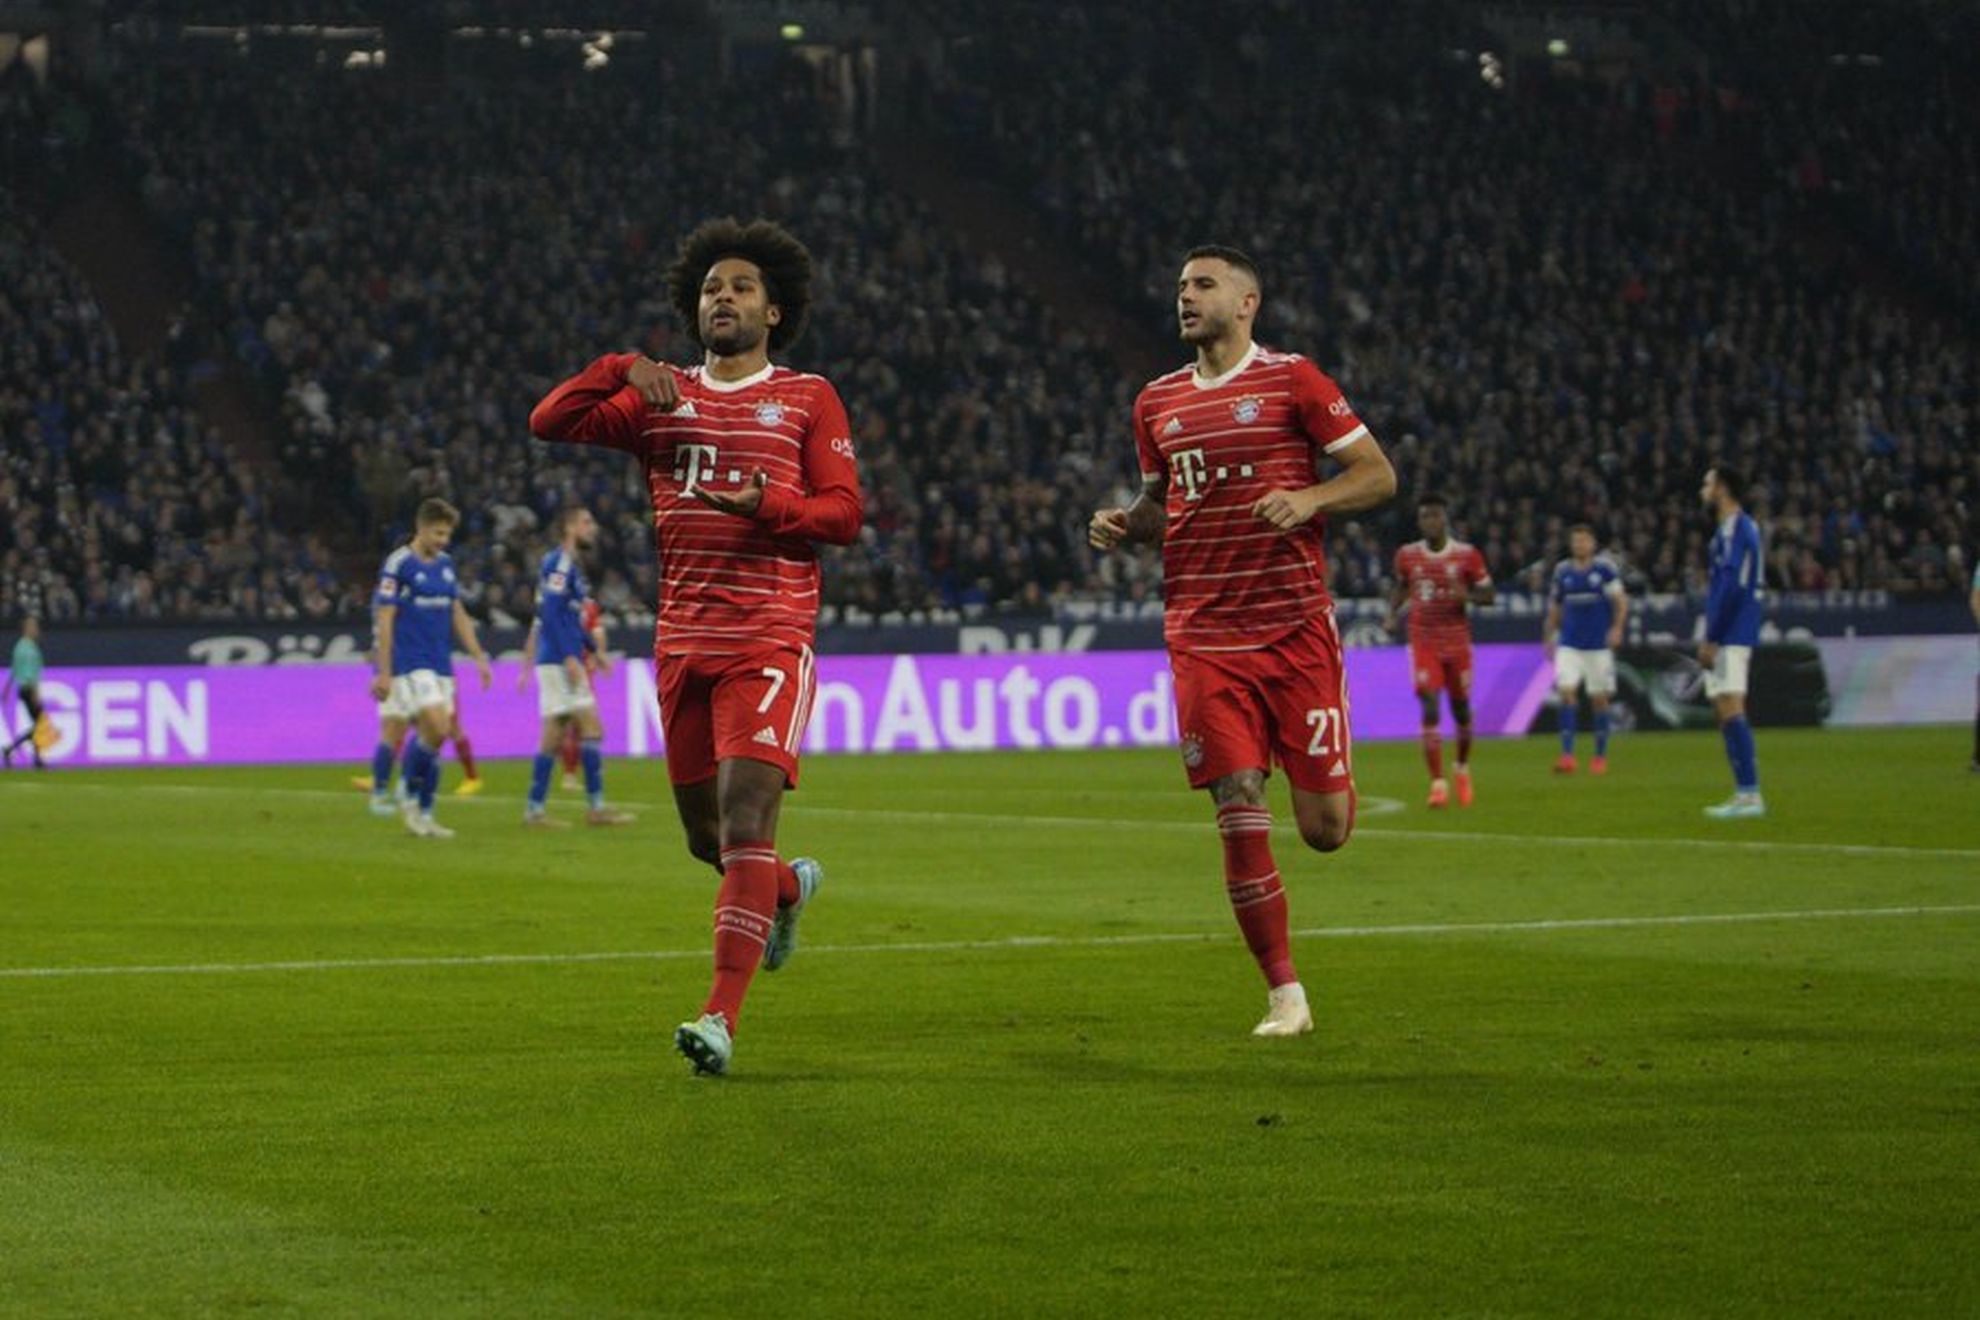 Bayern Munich celebrate their win over Schalke